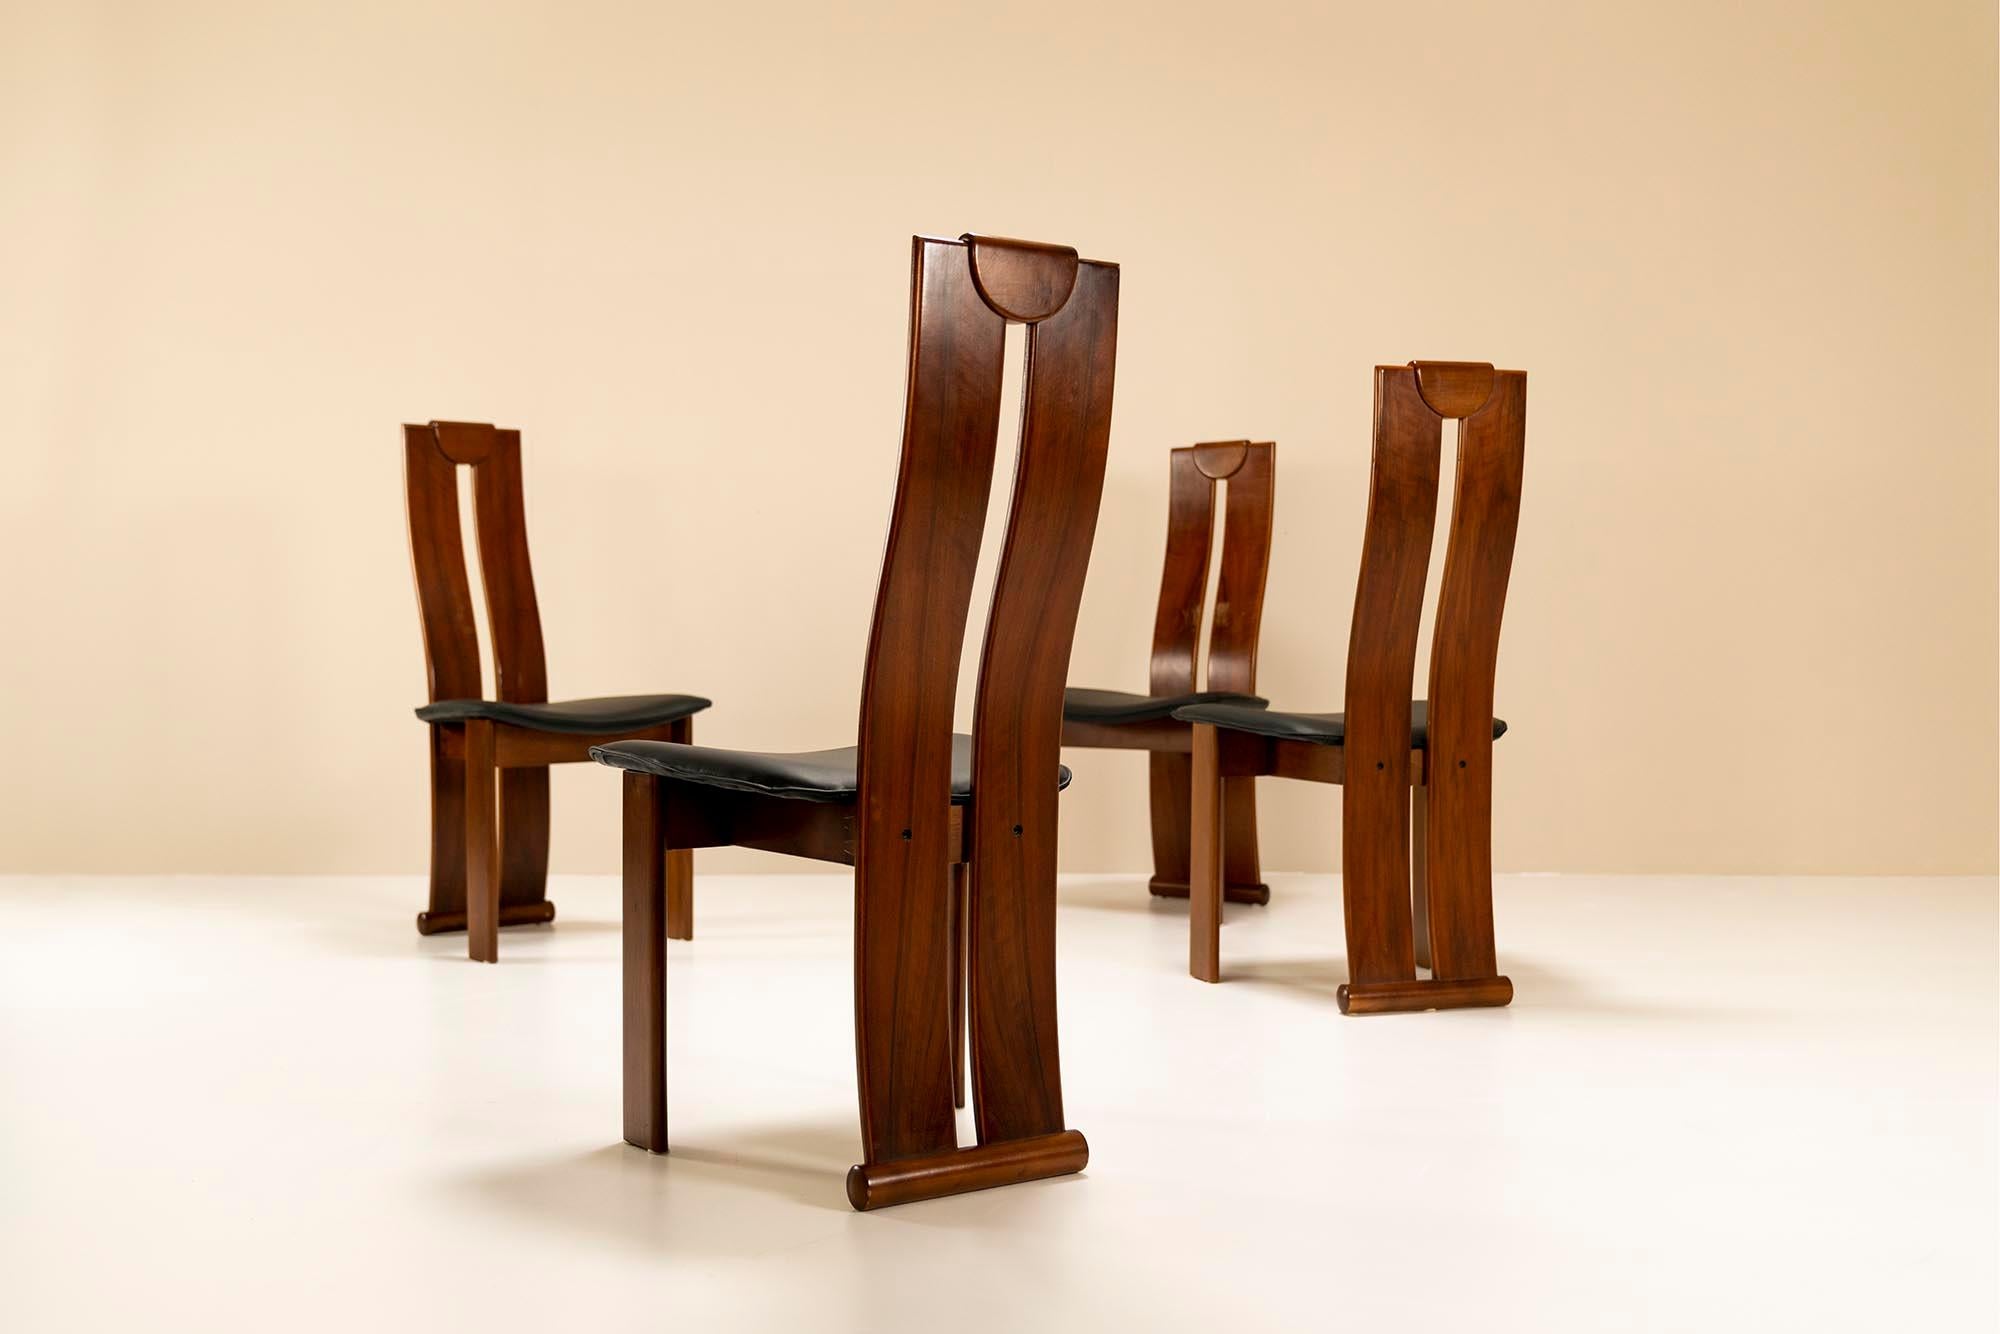 Ces chaises de salle à manger présentent de grandes similitudes avec les créations d'Afra et Tobia Scarpa et de Mobil Girgi. Il s'agit d'un design ludique qui suit la règle d'une chaise de salle à manger. Cela signifie que son esthétique doit être